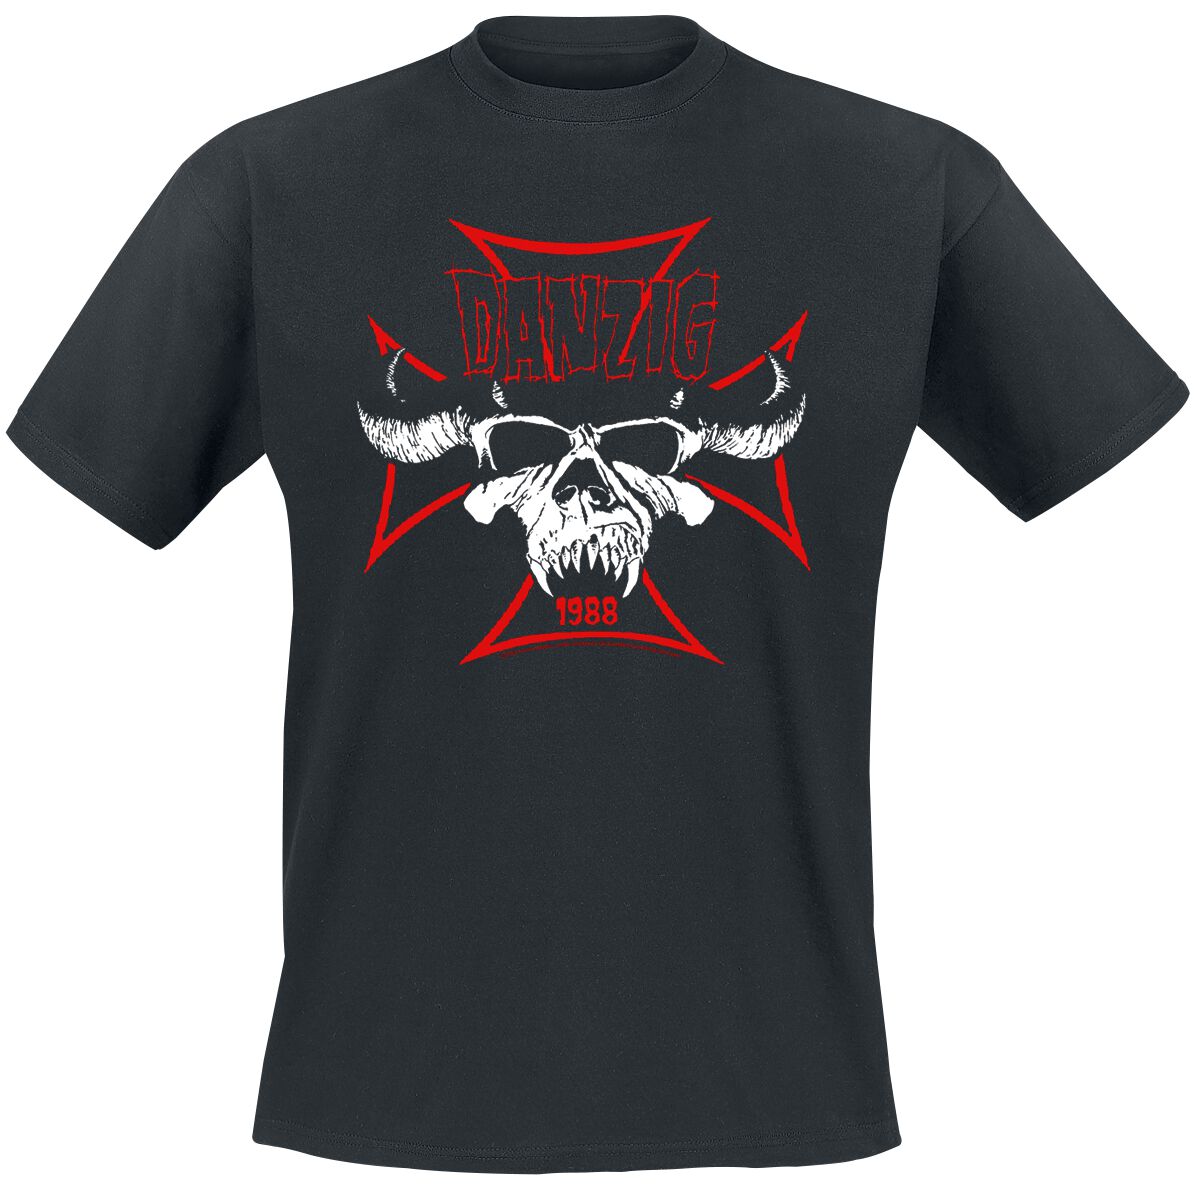 Danzig T-Shirt - Cross Skull - S bis 3XL - für Männer - Größe 3XL - schwarz  - Lizenziertes Merchandise!